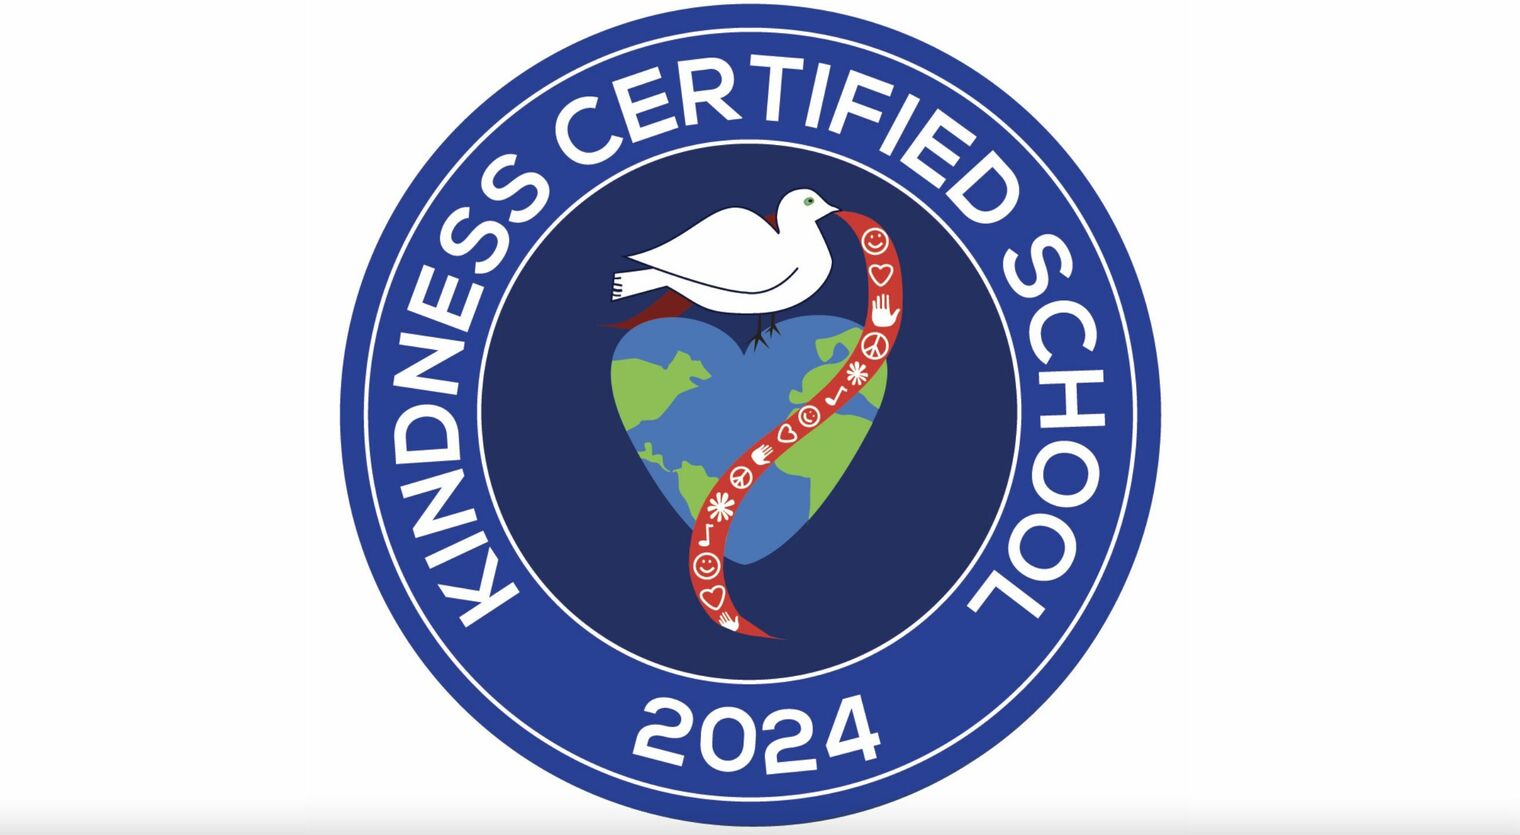 Kindness Certified School seal